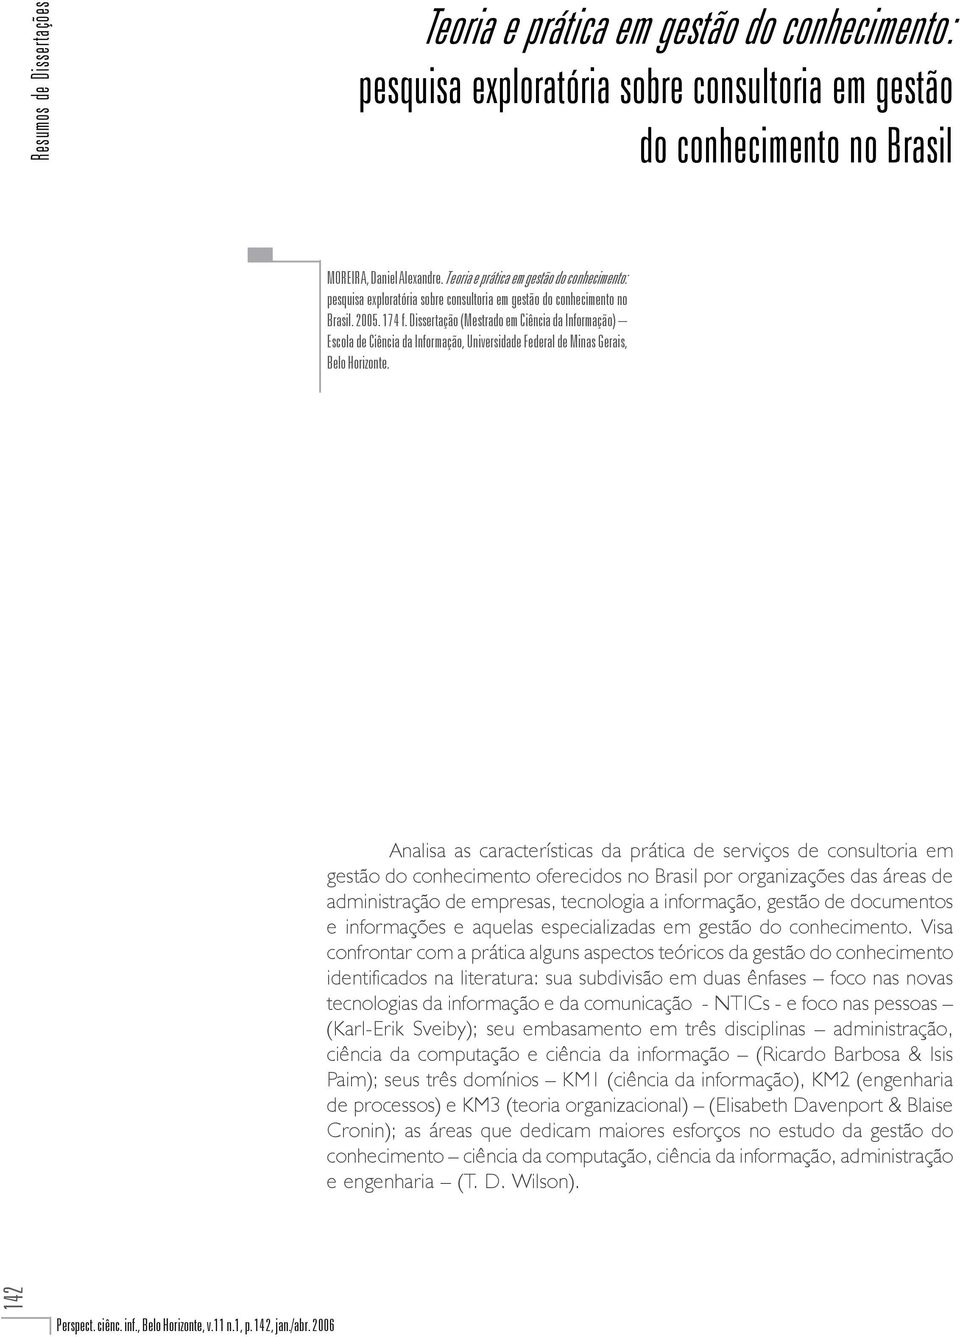 Dissertação (Mestrado em Ciência da Informação) Escola de Ciência da Informação, Universidade Federal de Minas Gerais, Belo Horizonte.